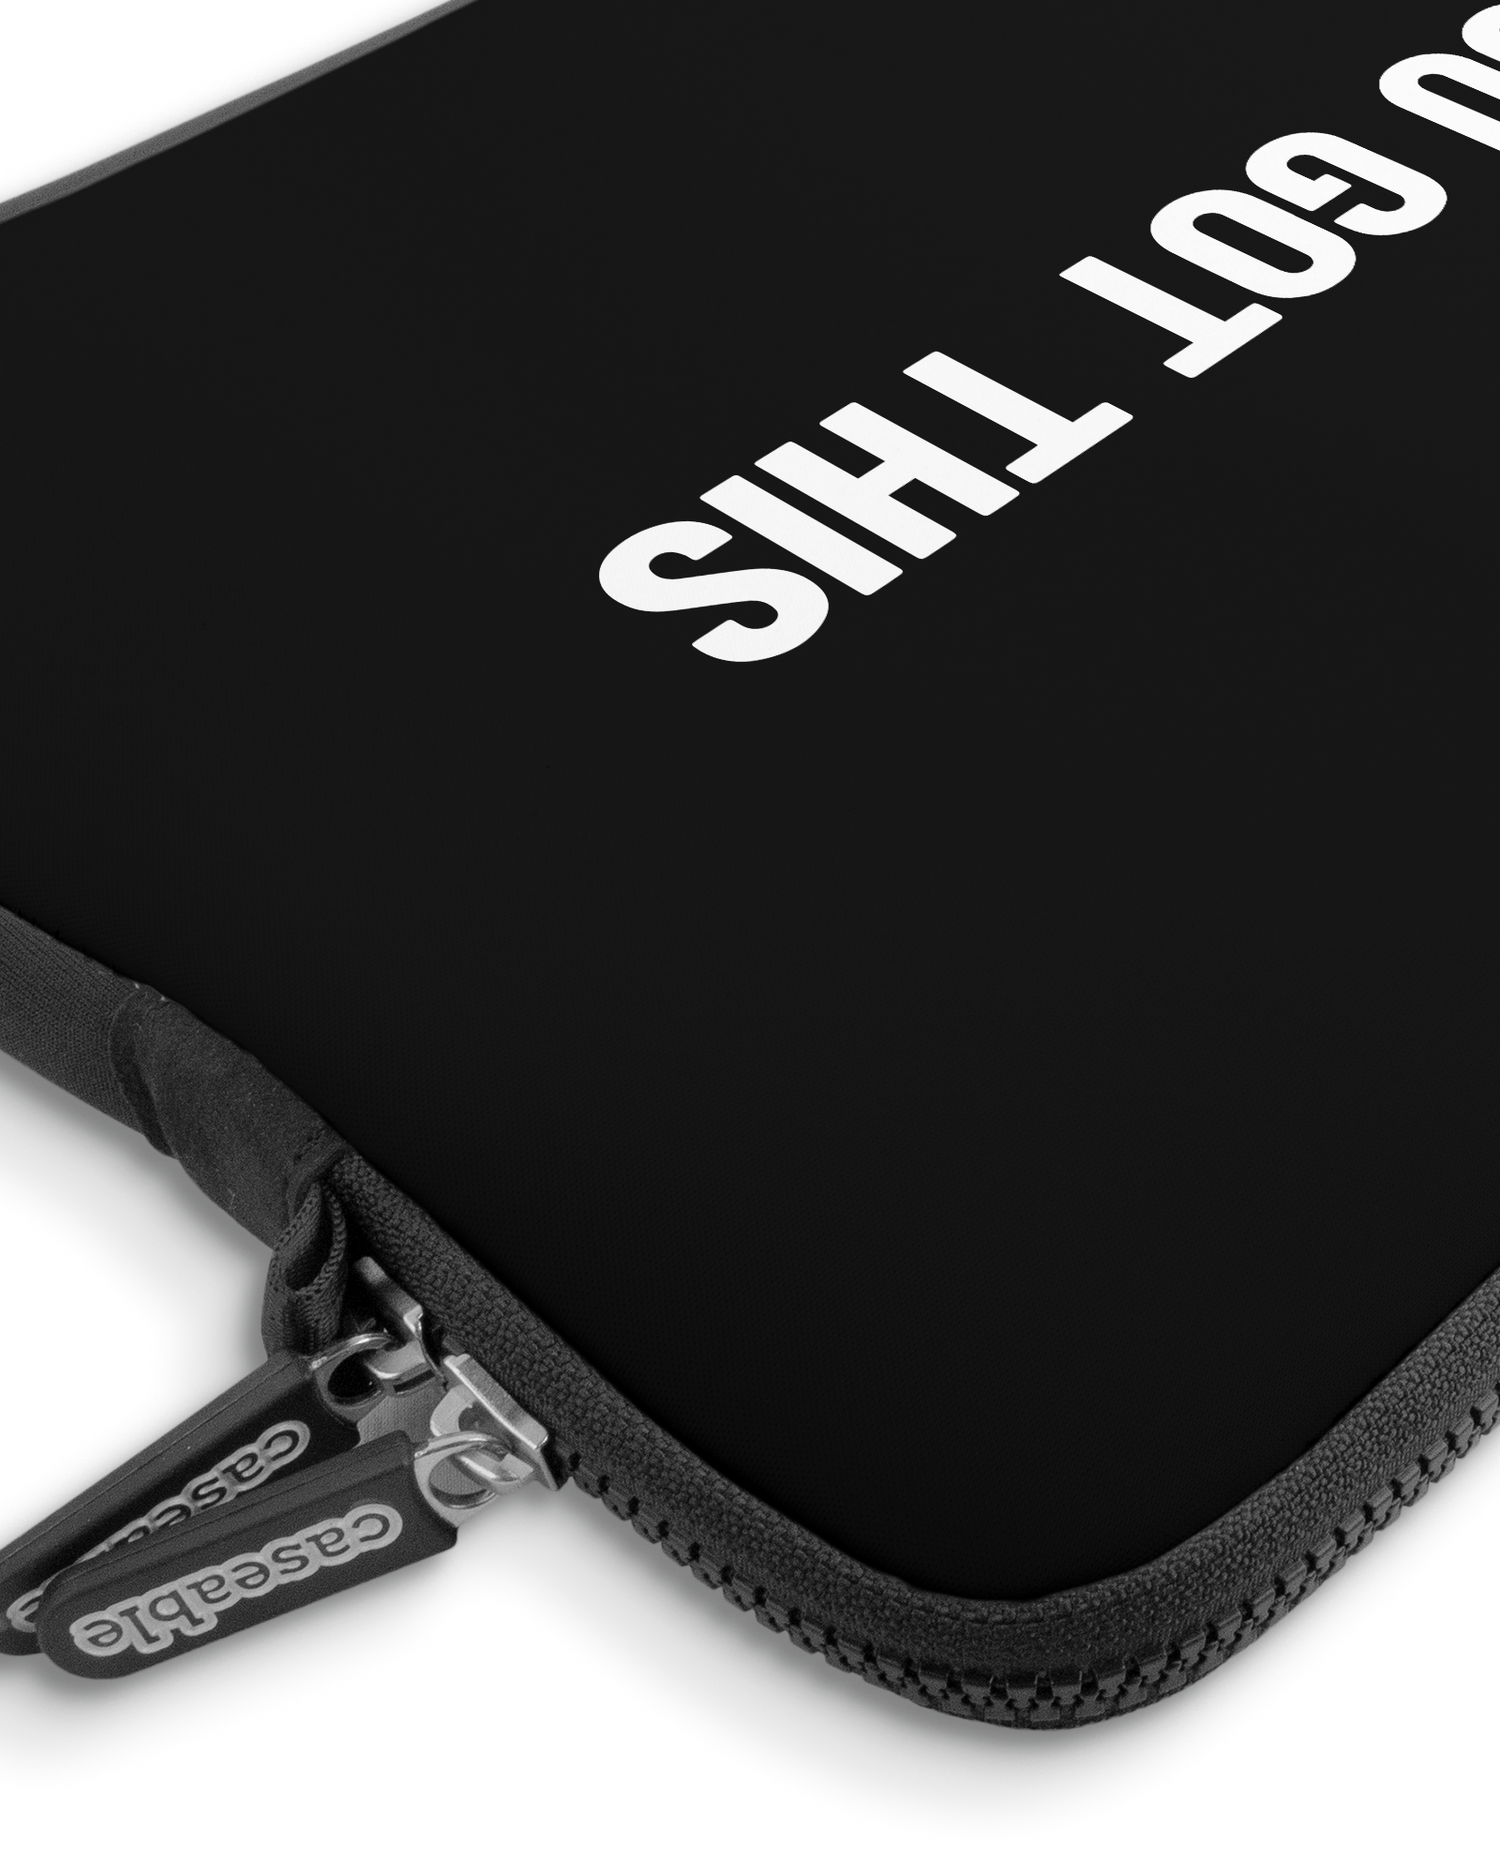 You Got This Black Premium Laptoptasche 13-14 Zoll mit Gerät im Inneren